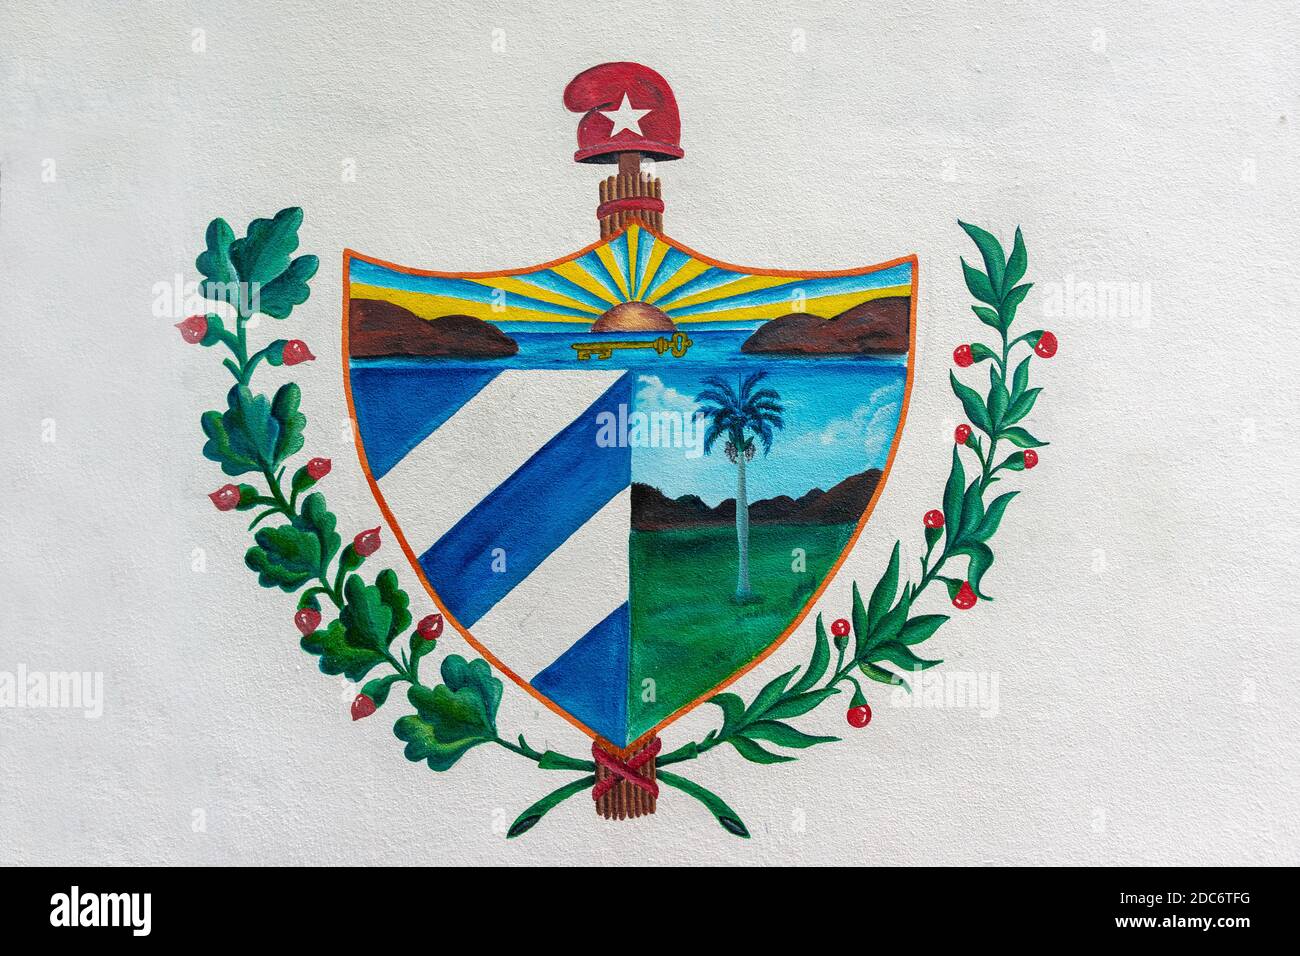 Cuban national symbol, coat of arms Stock Photo